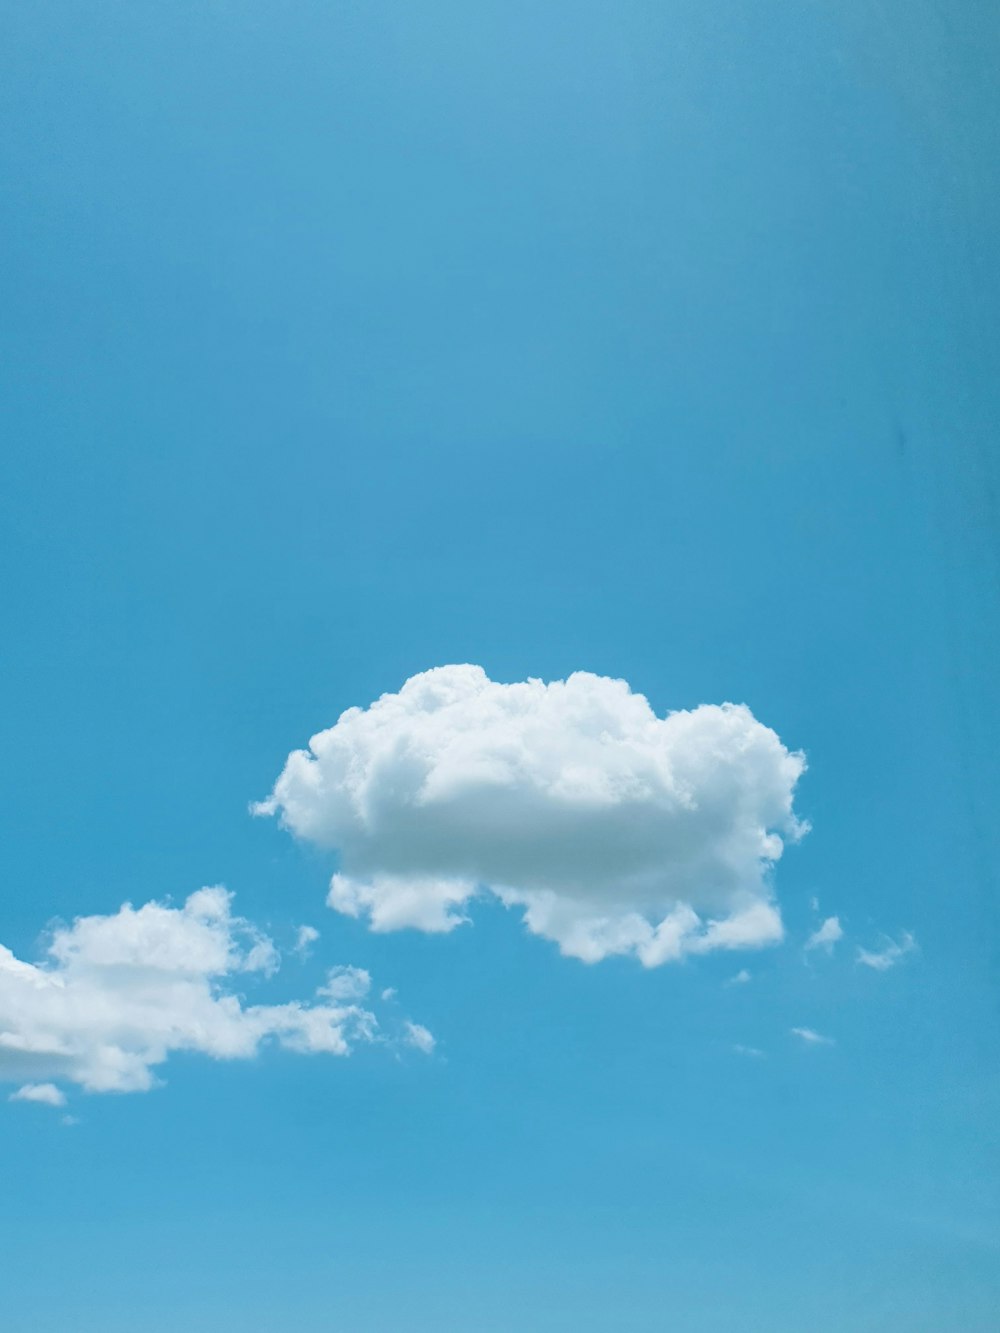 a lone cloud in a blue sky